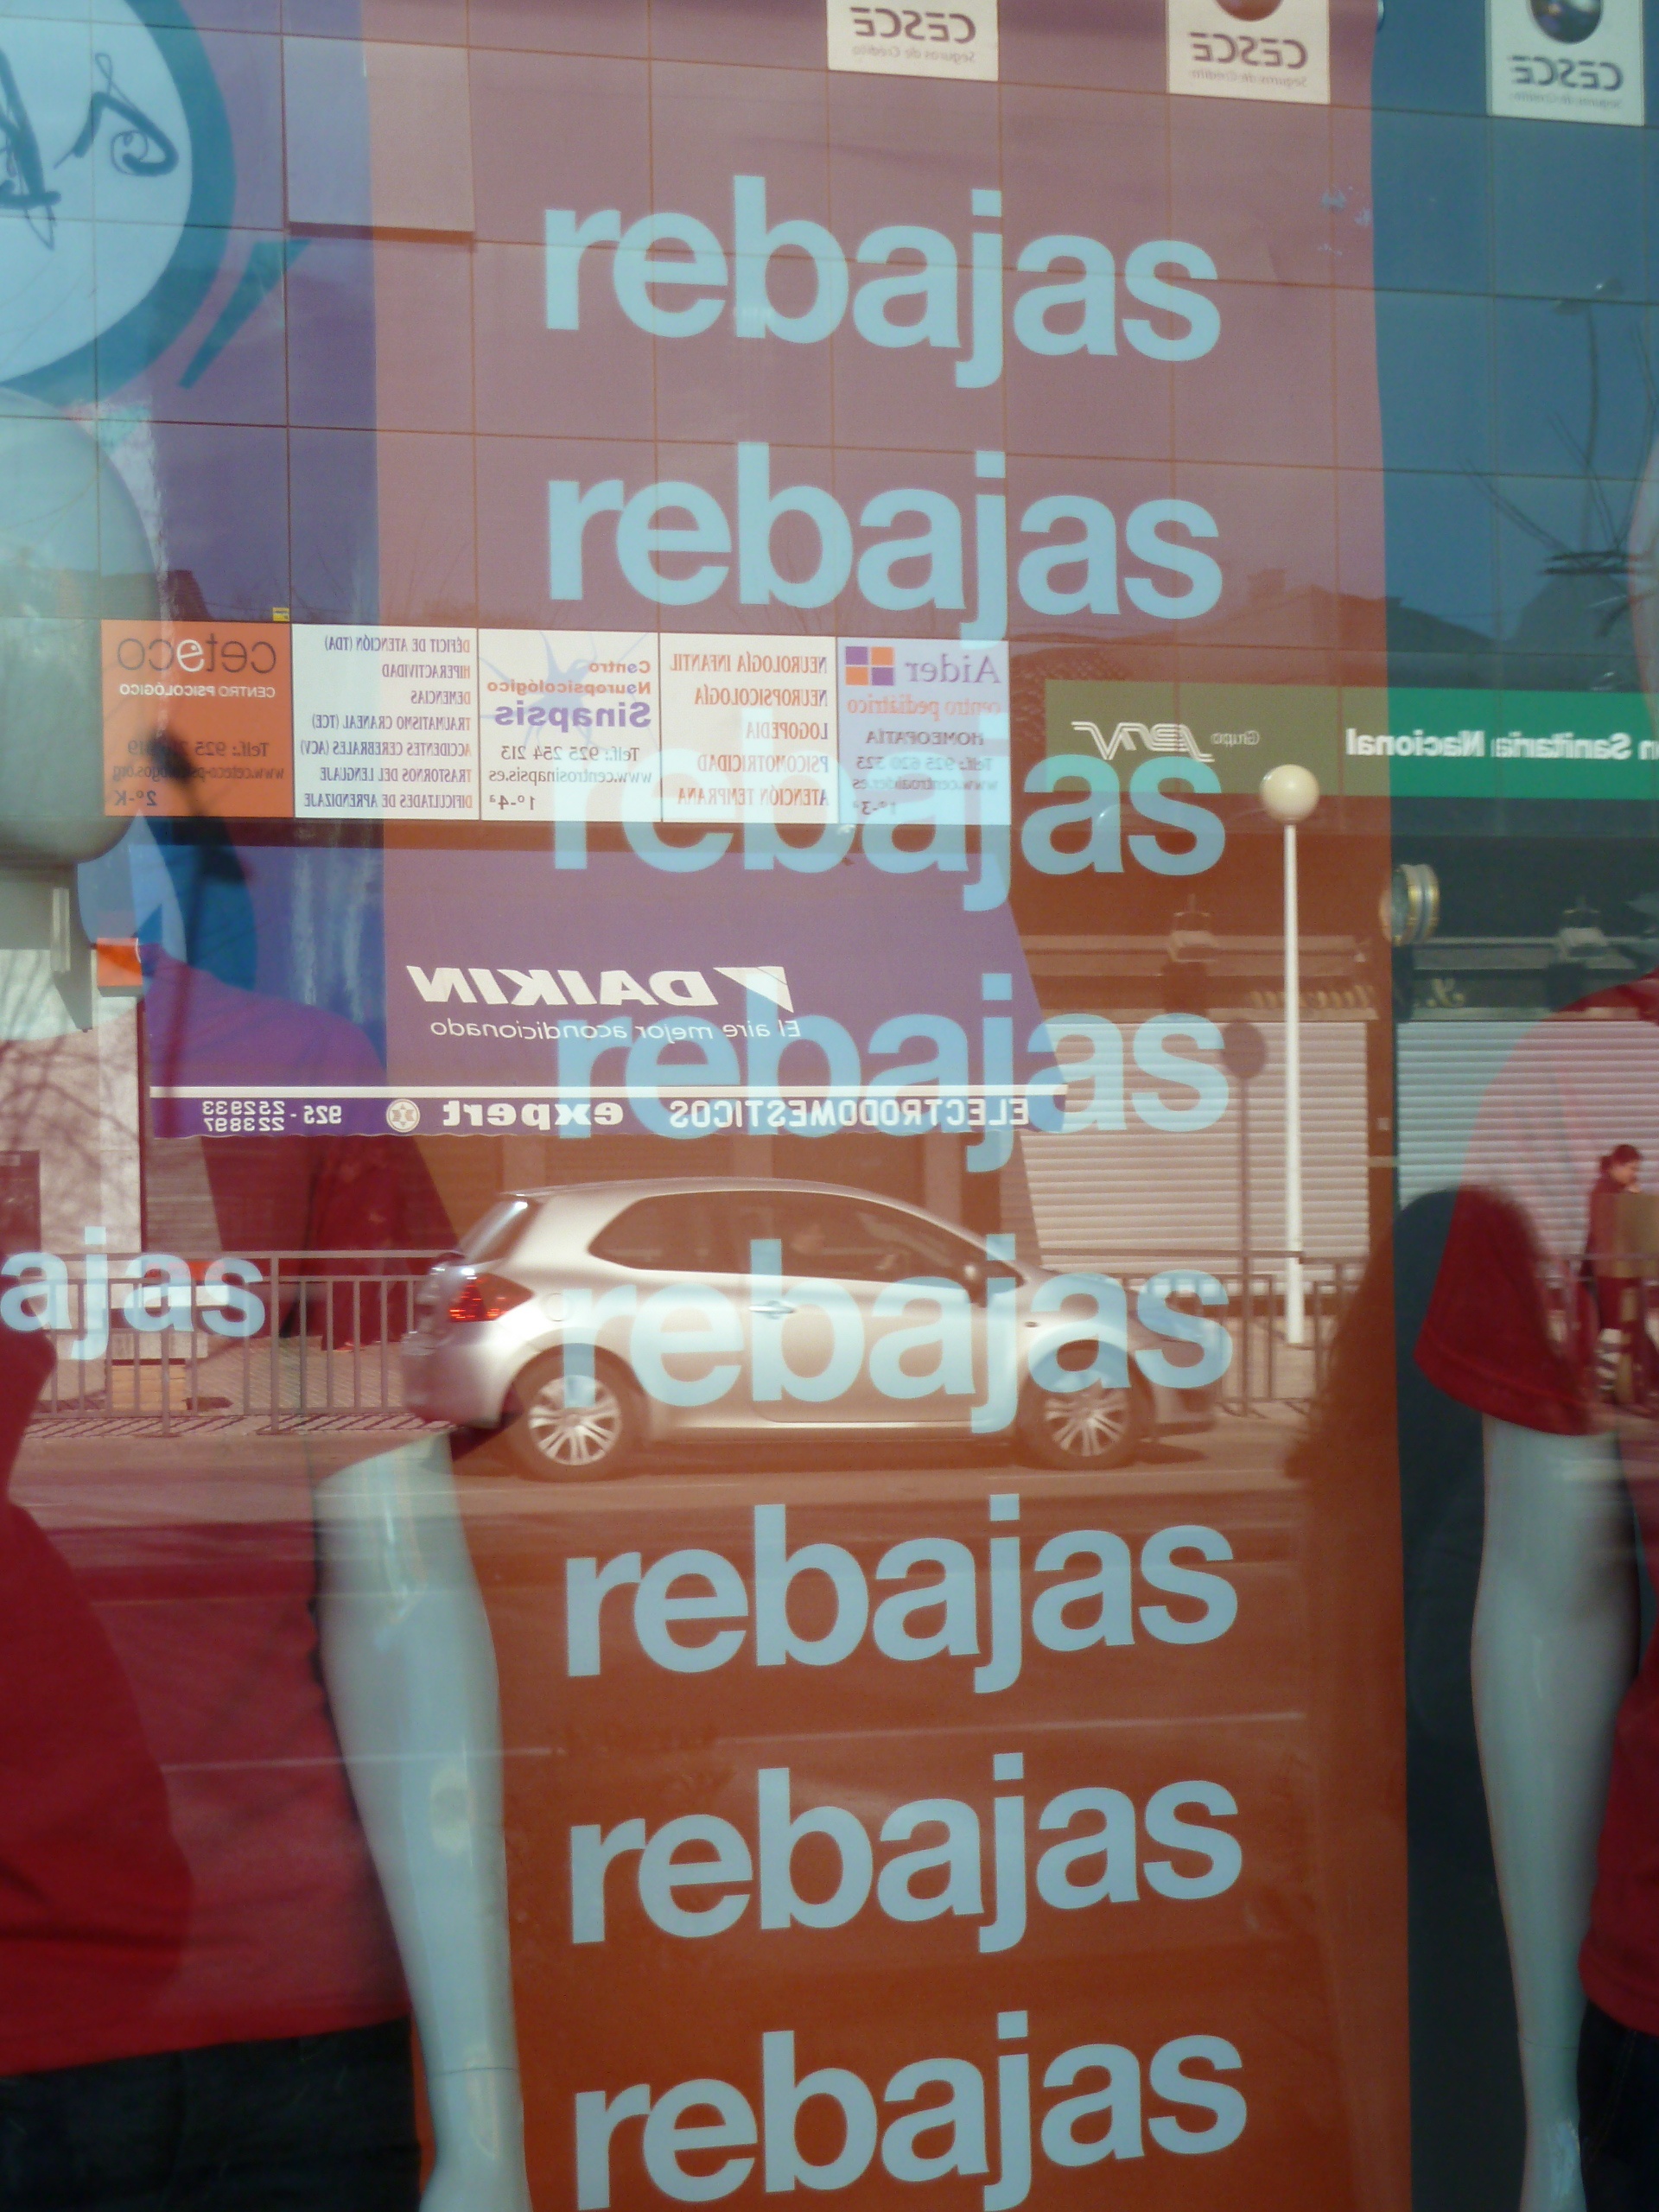 Los españoles aumentan su gasto en rebajas un 20% respecto a 2012